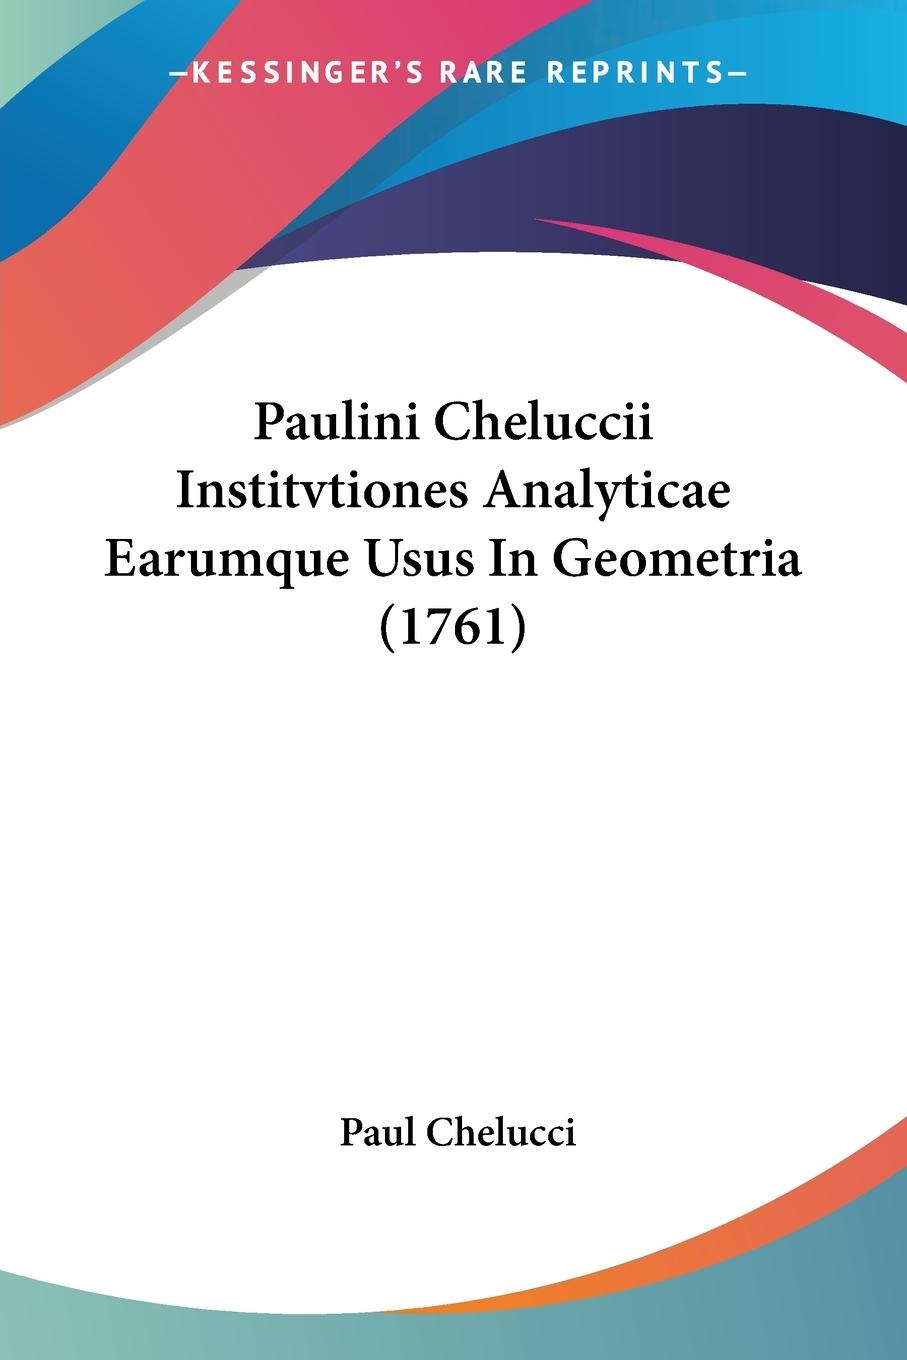 Paulini Cheluccii Institvtiones Analyticae Earumque Usus In Geometria (1761) - Chelucci, Paul